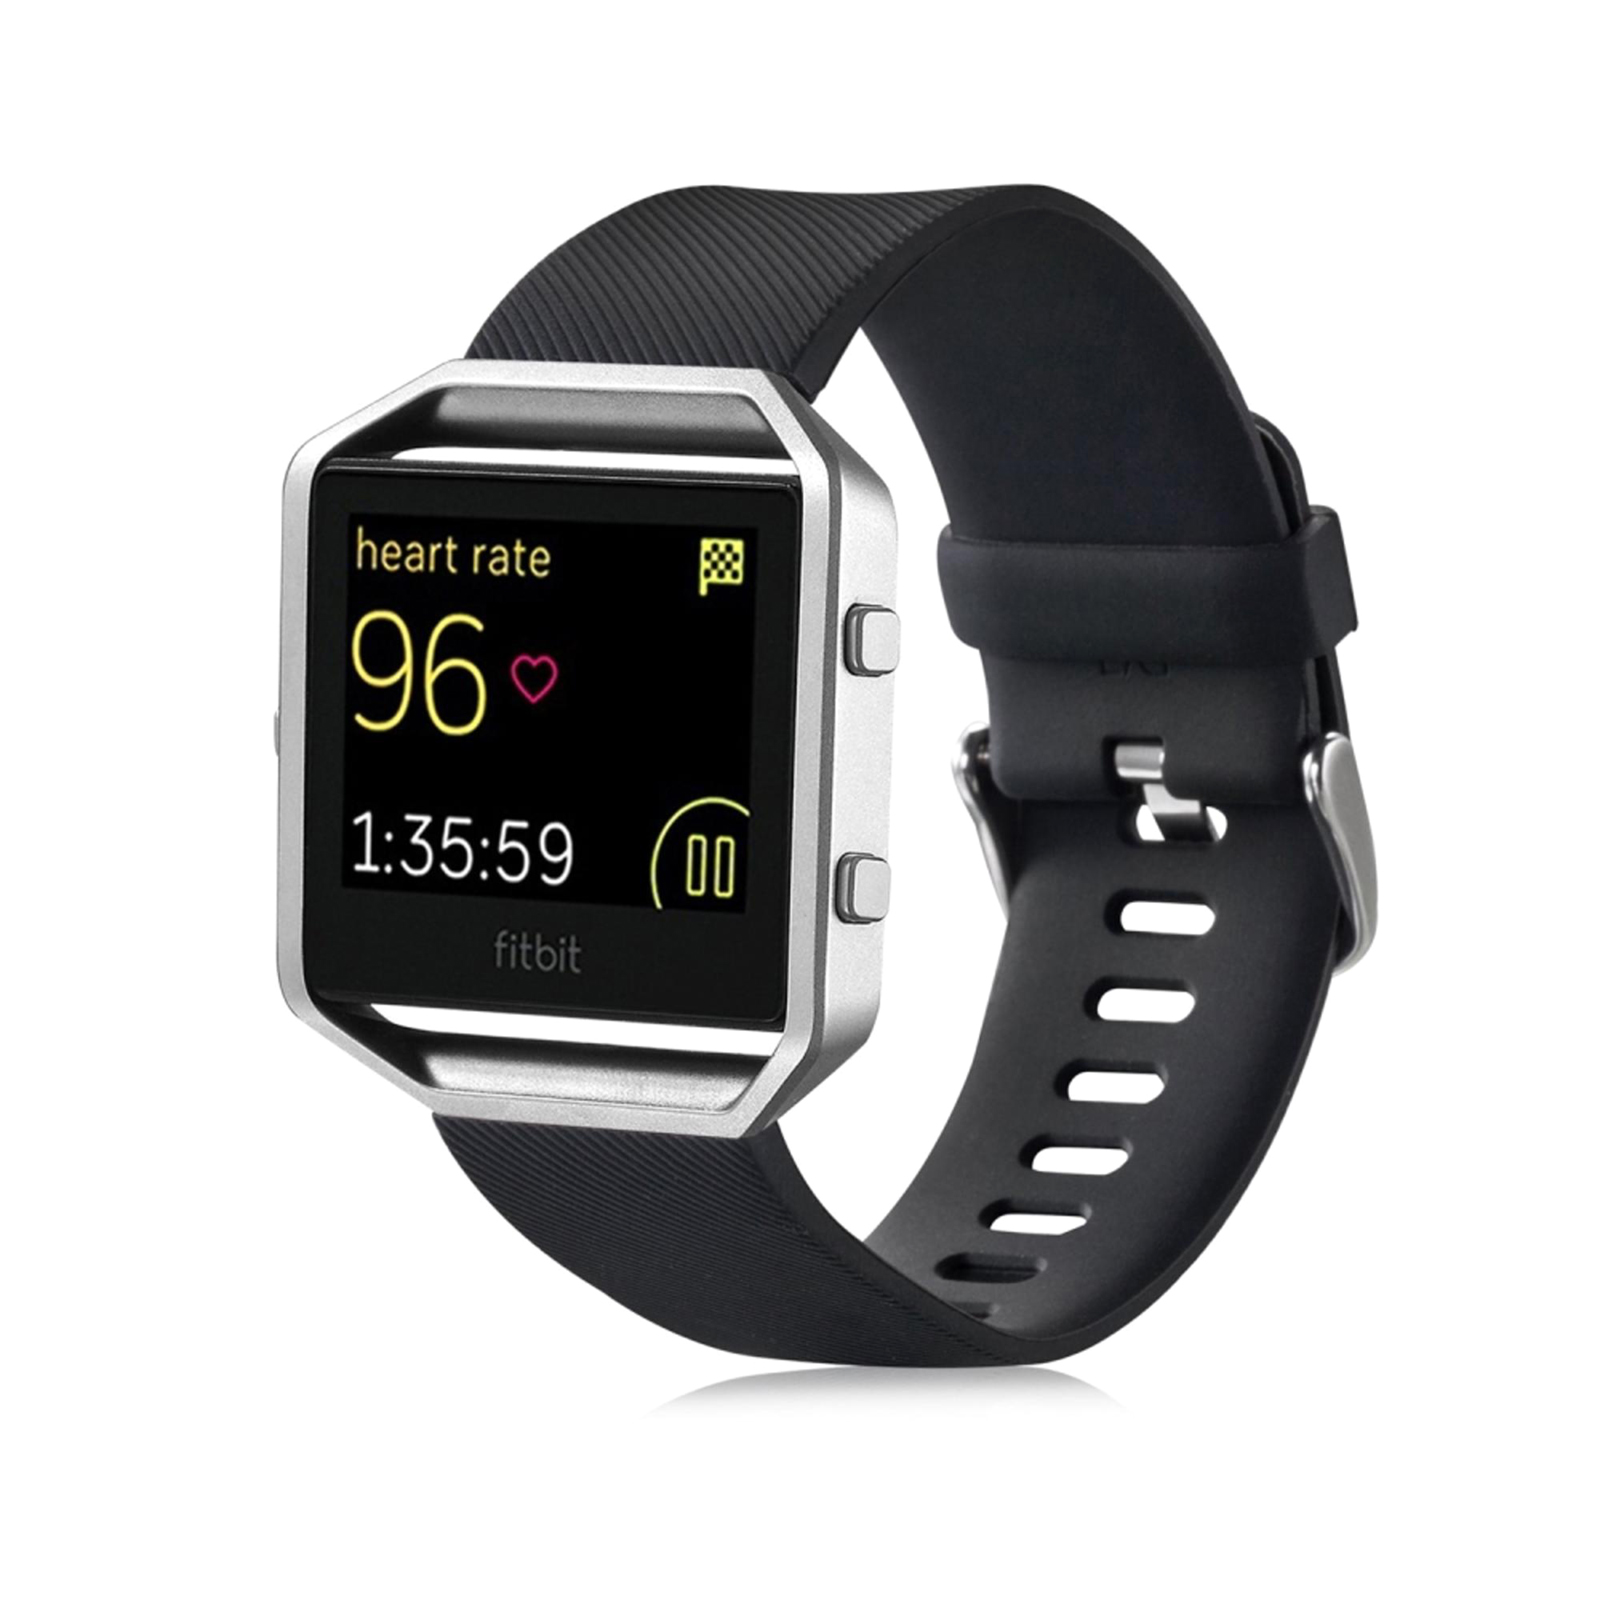 fitbit blaze smart fitness watch price